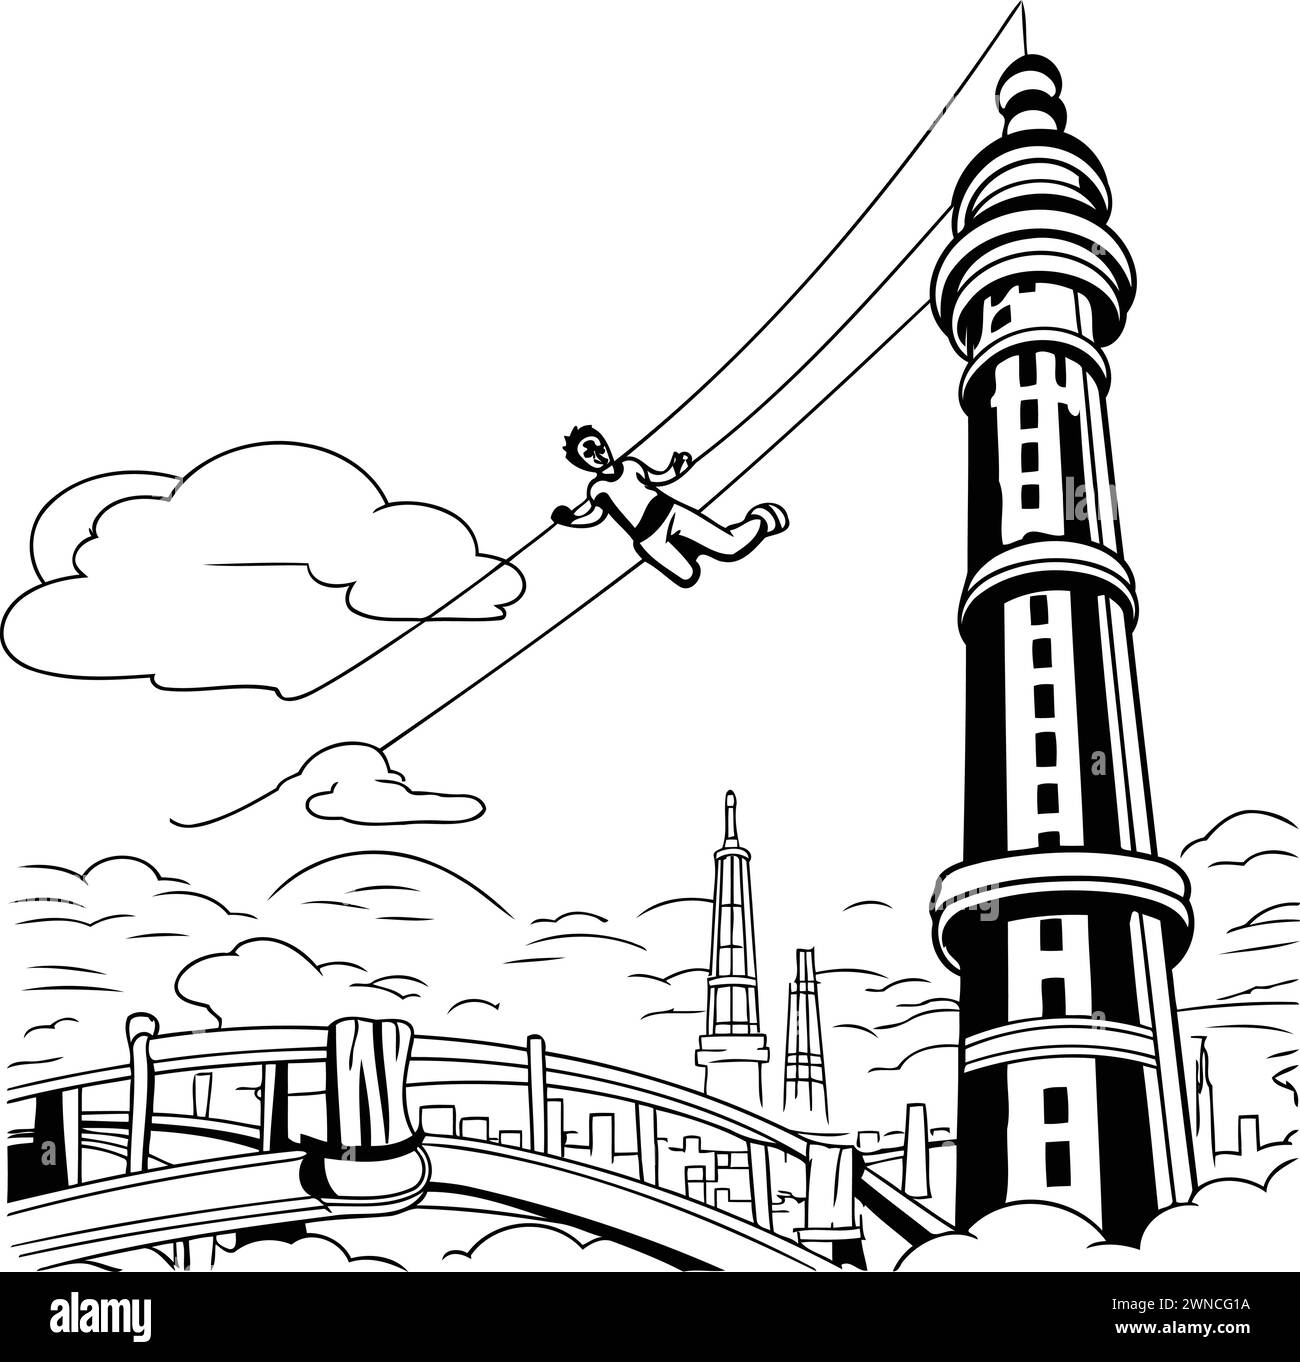 Illustration vectorielle d'un homme en équilibre sur une corde au-dessus du pont. Illustration de Vecteur